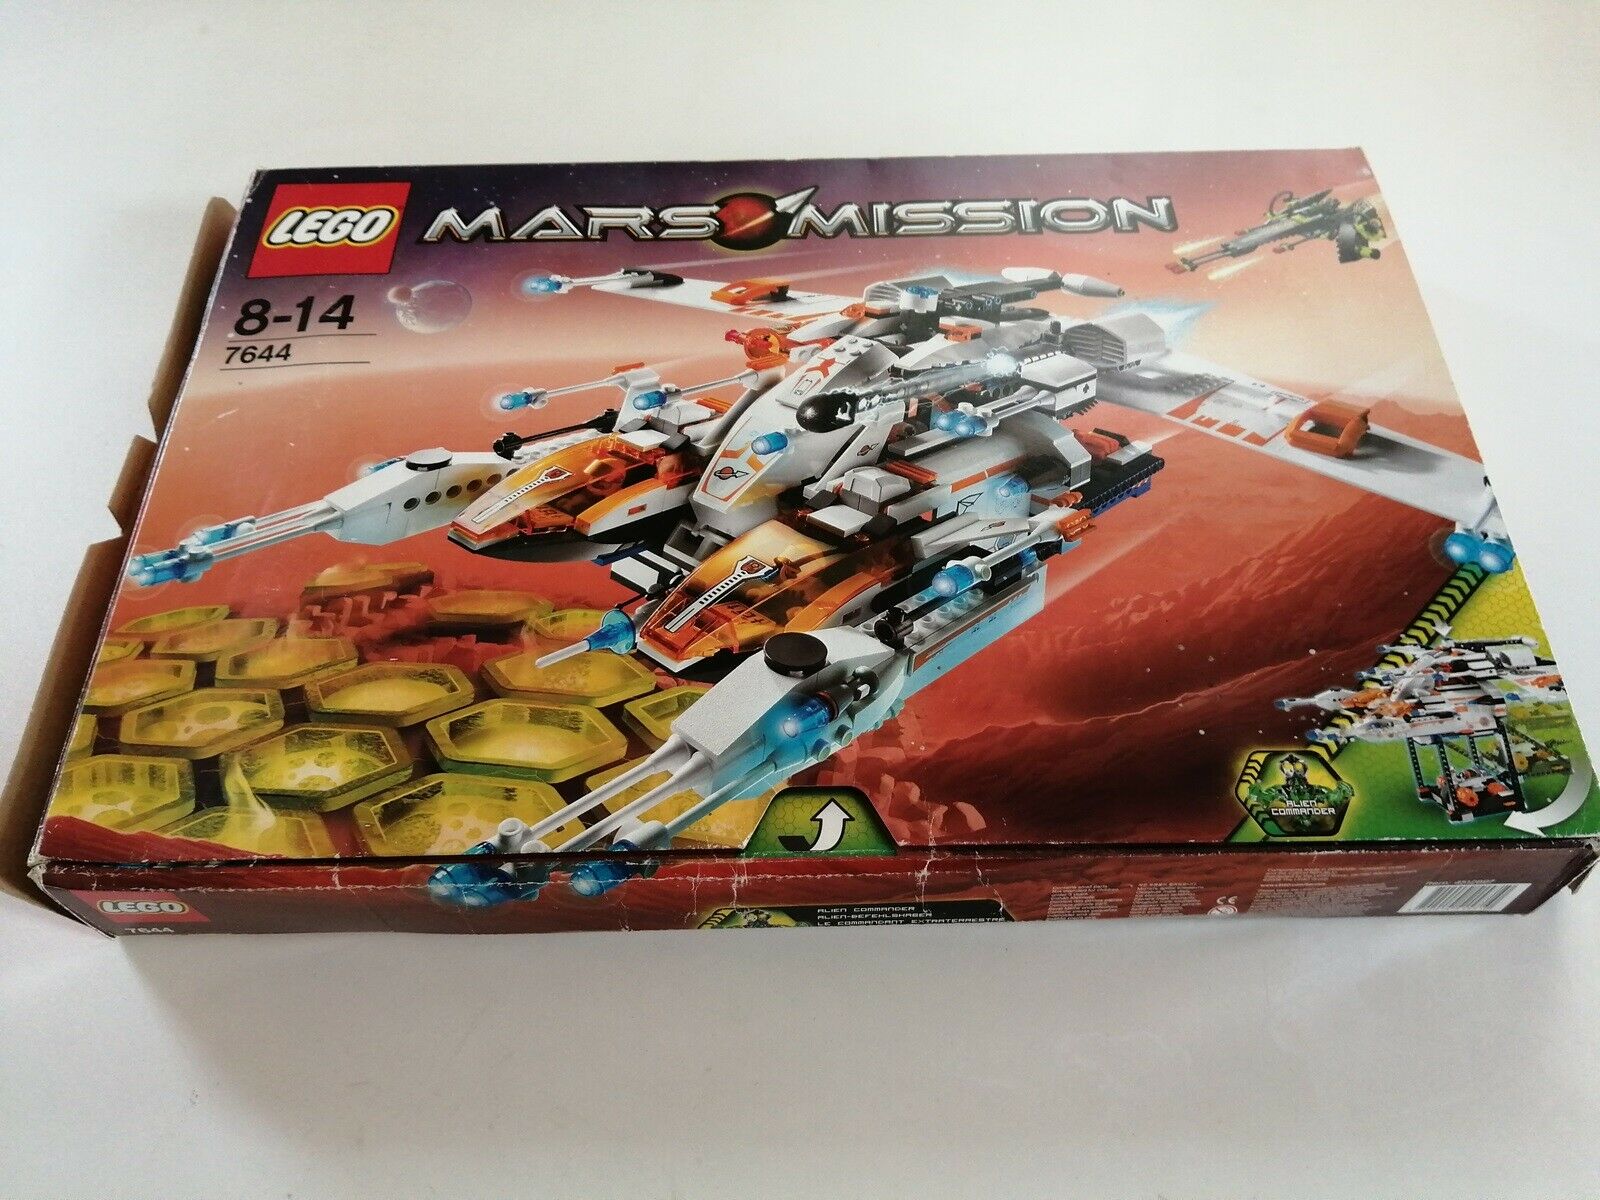 Hoved grænseflade hellige Lego Space, 7644 Mars Mission med æske. – dba.dk – Køb og Salg af Nyt og  Brugt